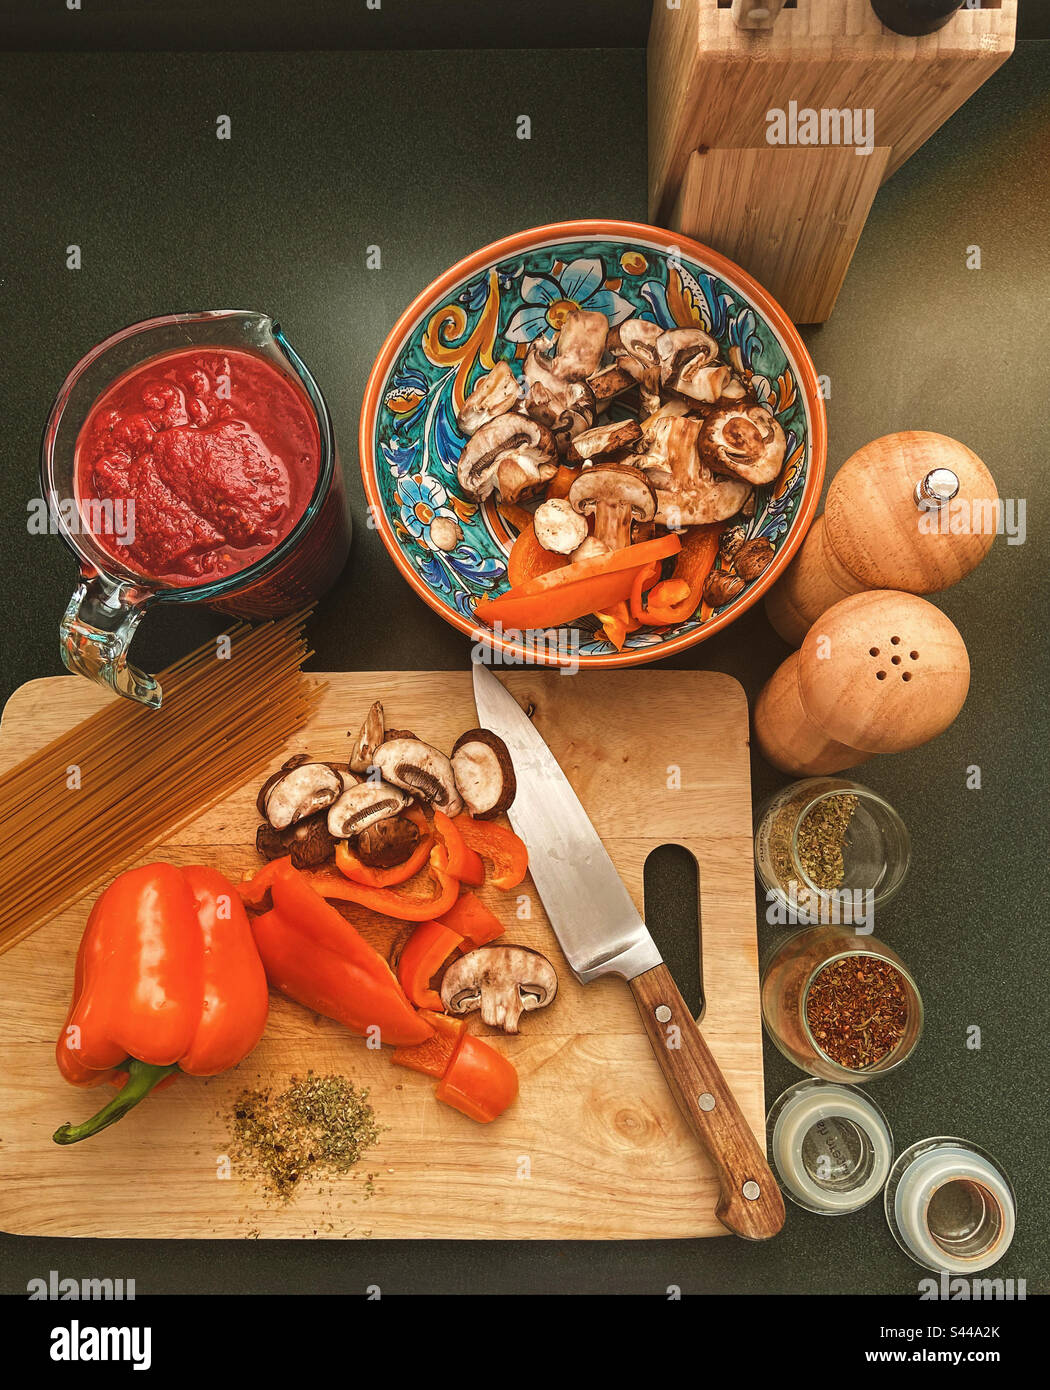 La nourriture italienne prépare les tomates en purée dans une tasse à mesurer, les champignons en tranches et les poivrons sur la planche à découper avec un couteau, un saupoudreur, un moulin à poivre, des épices, des pâtes sur le comptoir de cuisine vu d'en haut. Banque D'Images